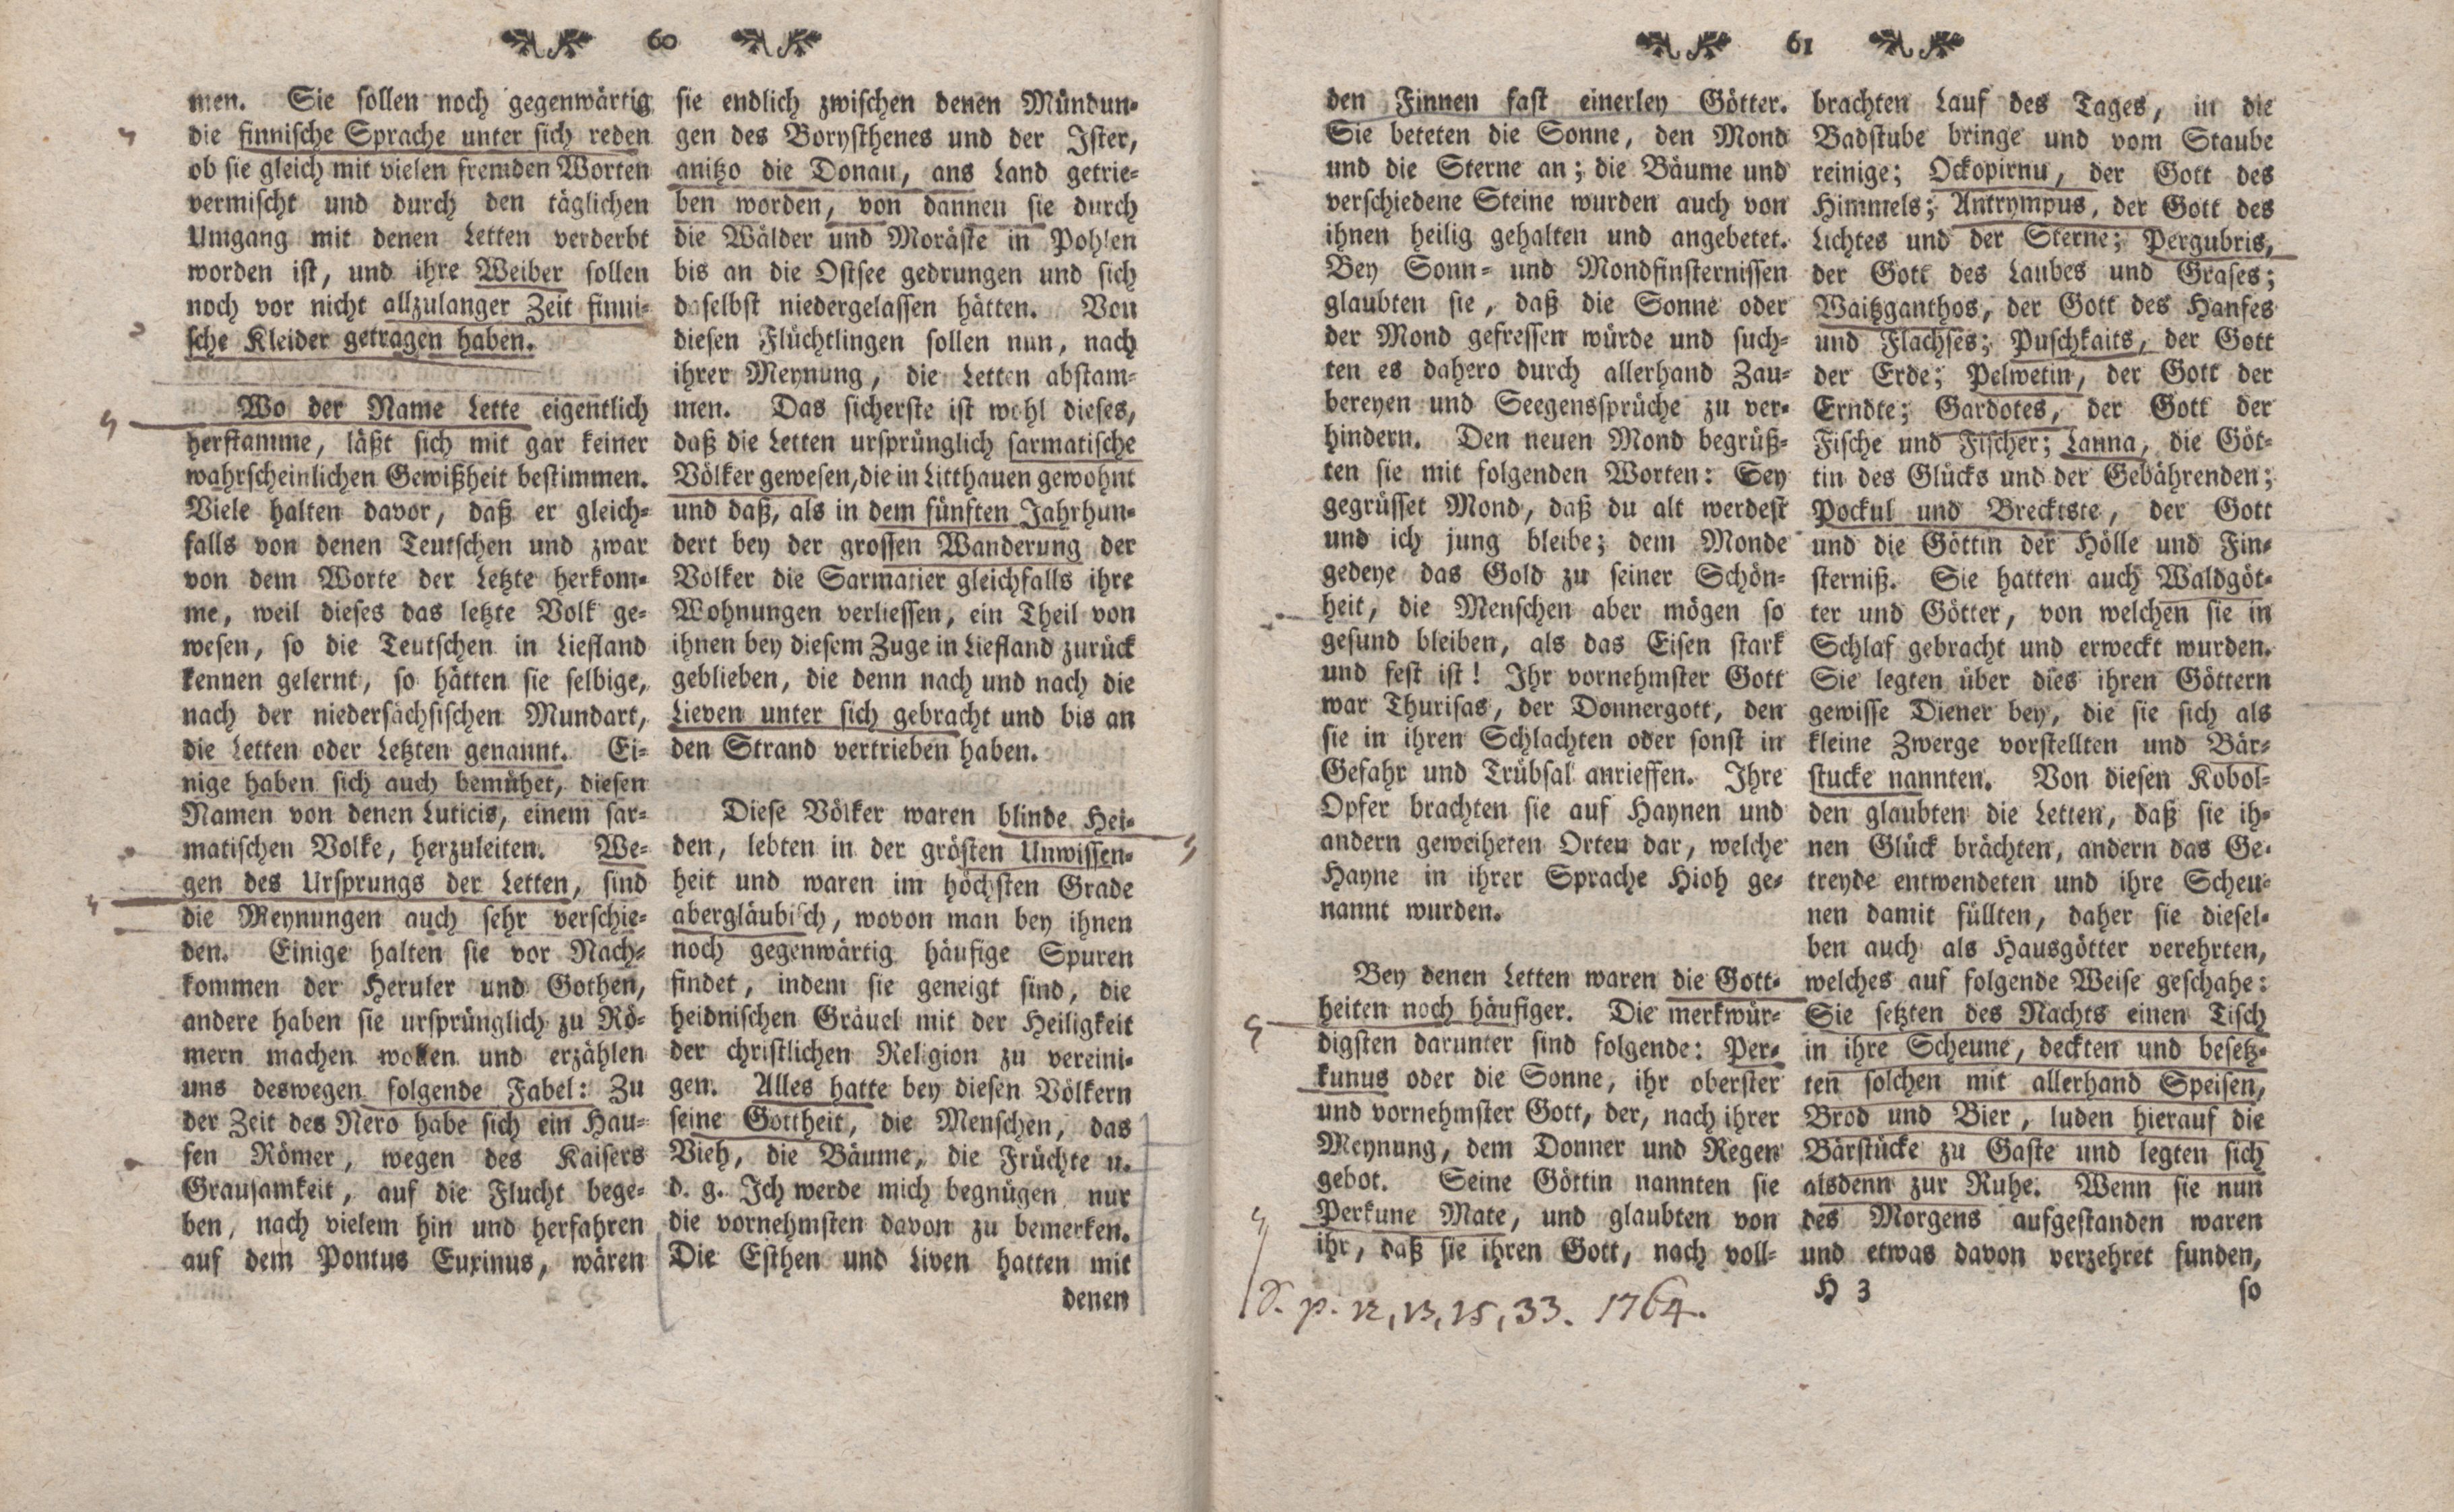 Gelehrte Beyträge zu den Rigischen Anzeigen 1761 (1761) | 30. (60-61) Main body of text